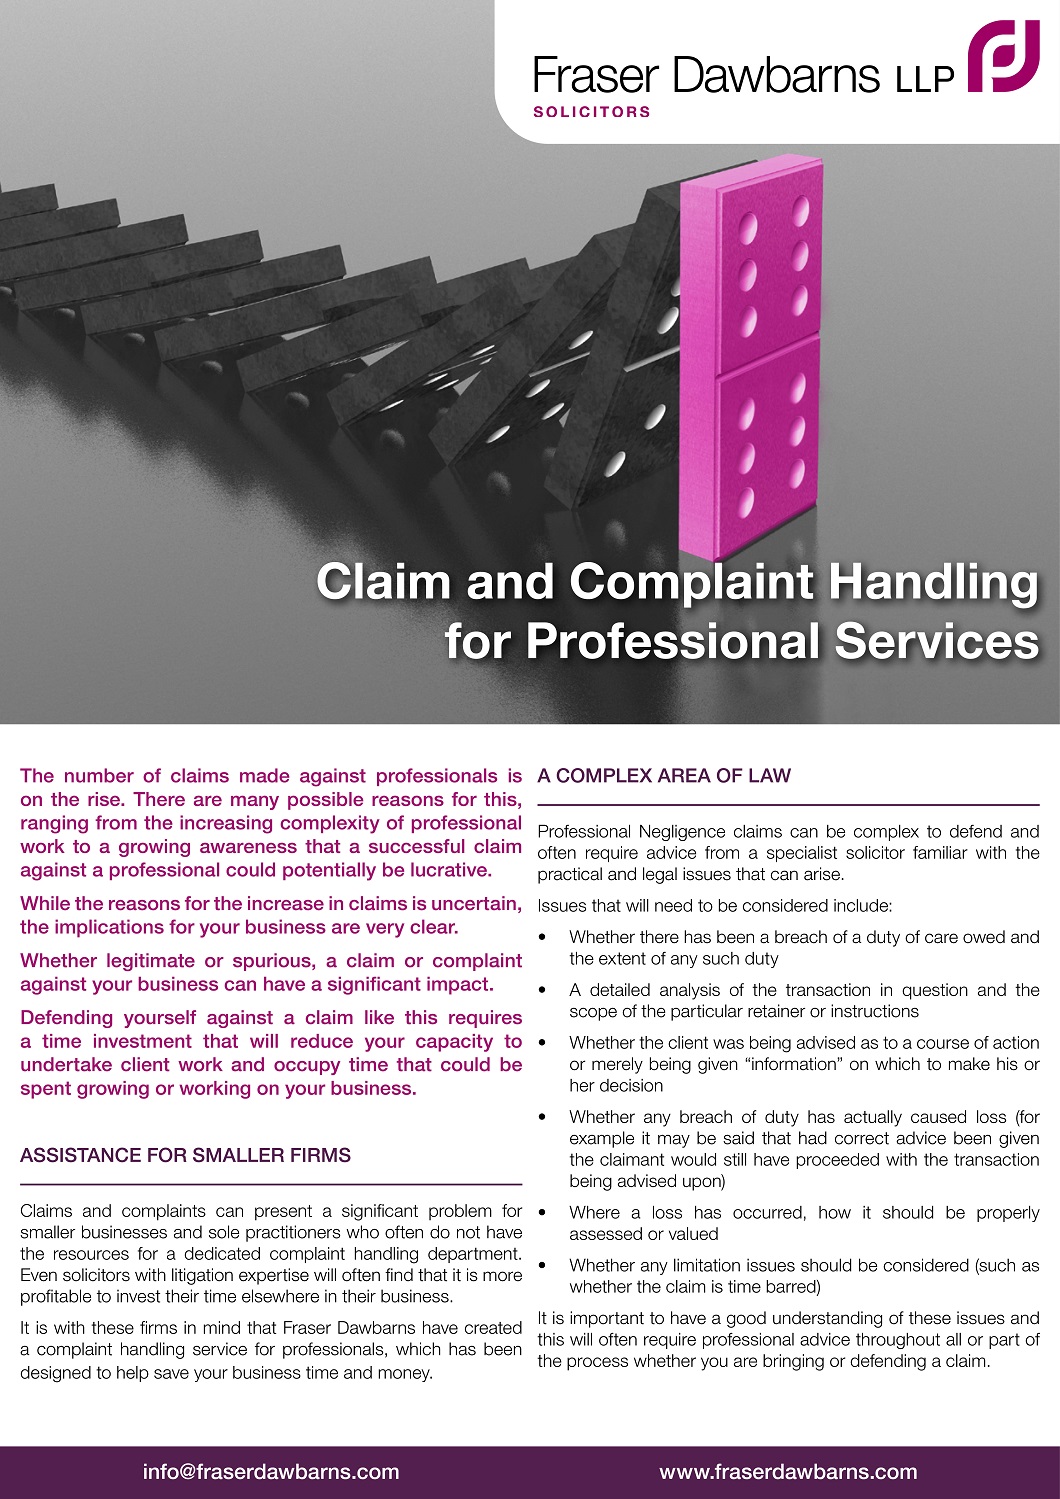 claims-complaints